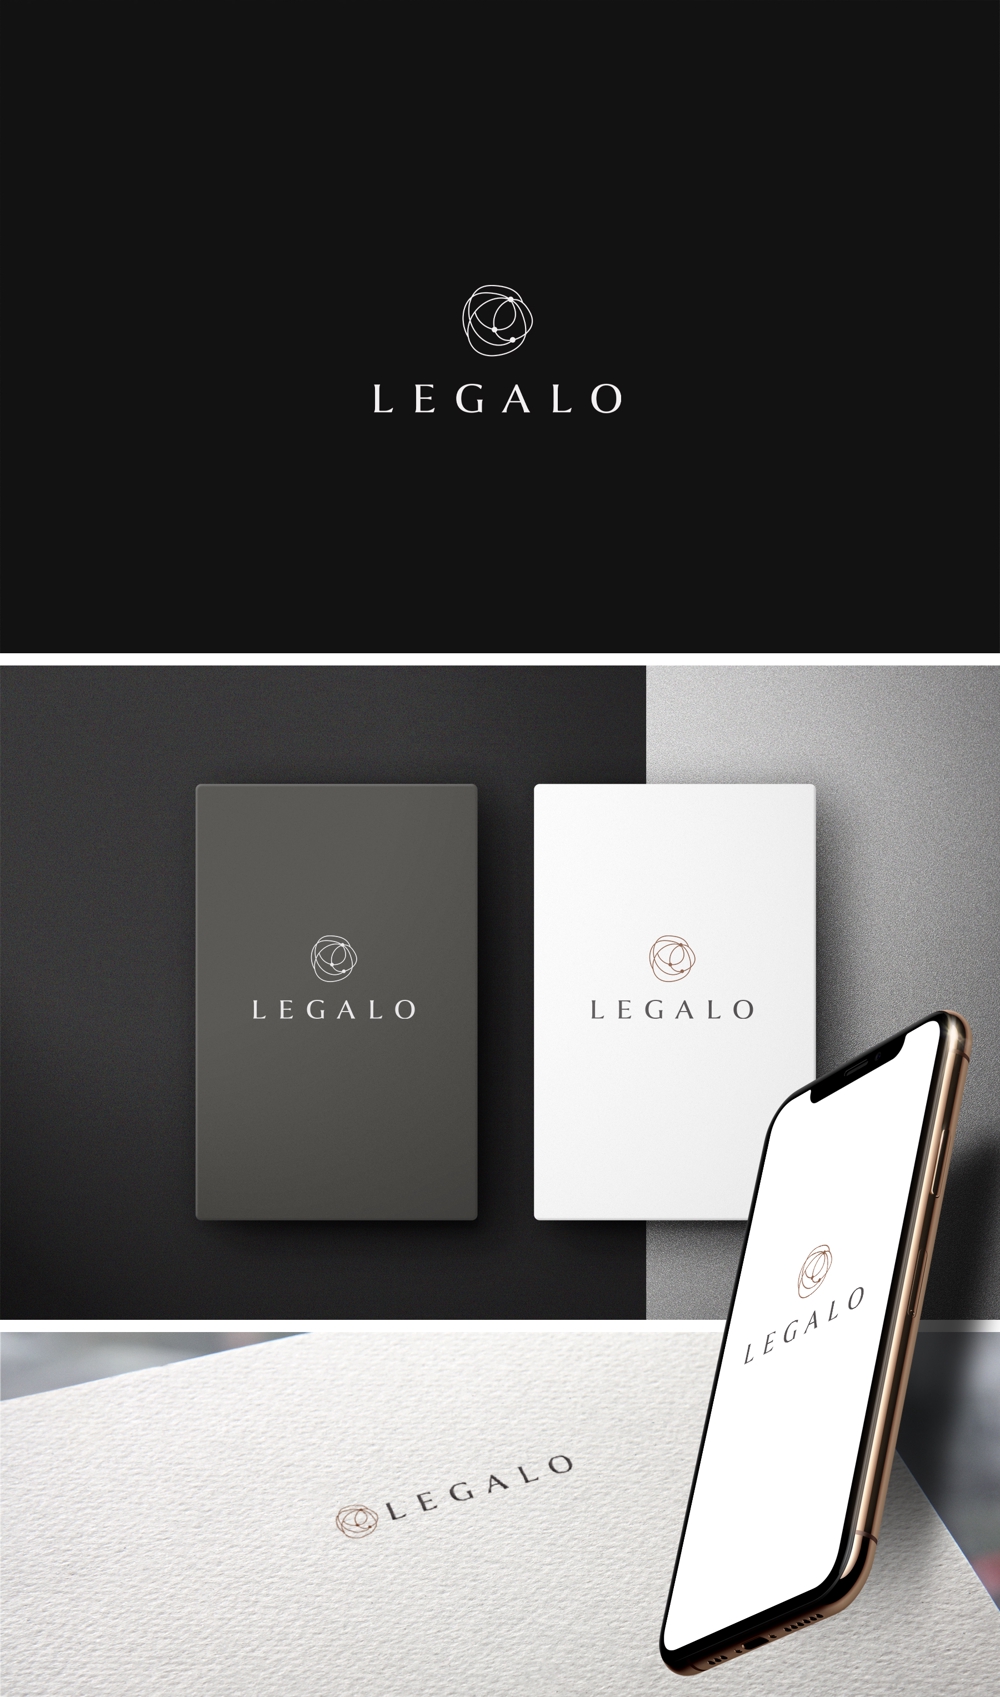 新規OPENレストラン「LEGALO」のロゴ募集